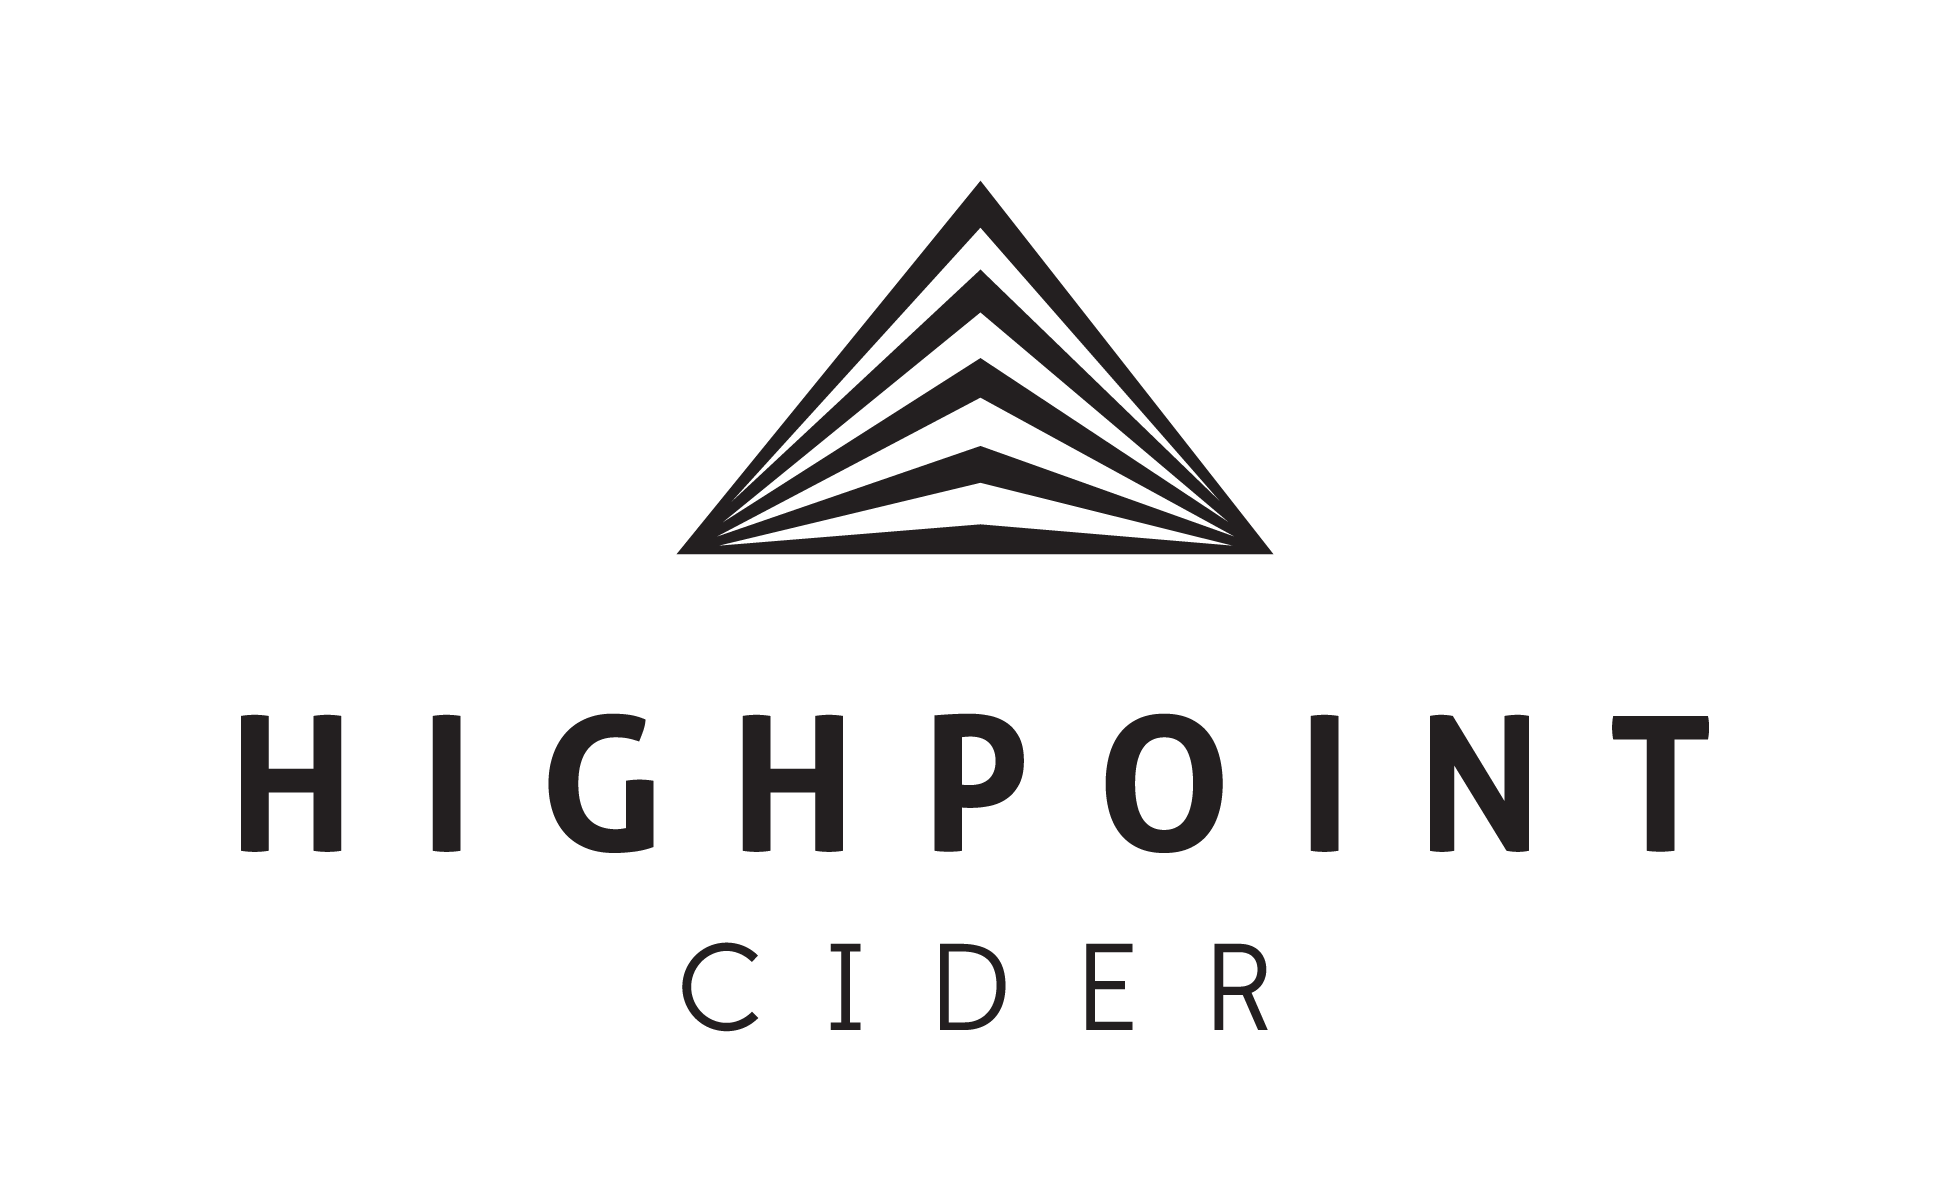 Highpoint Cider